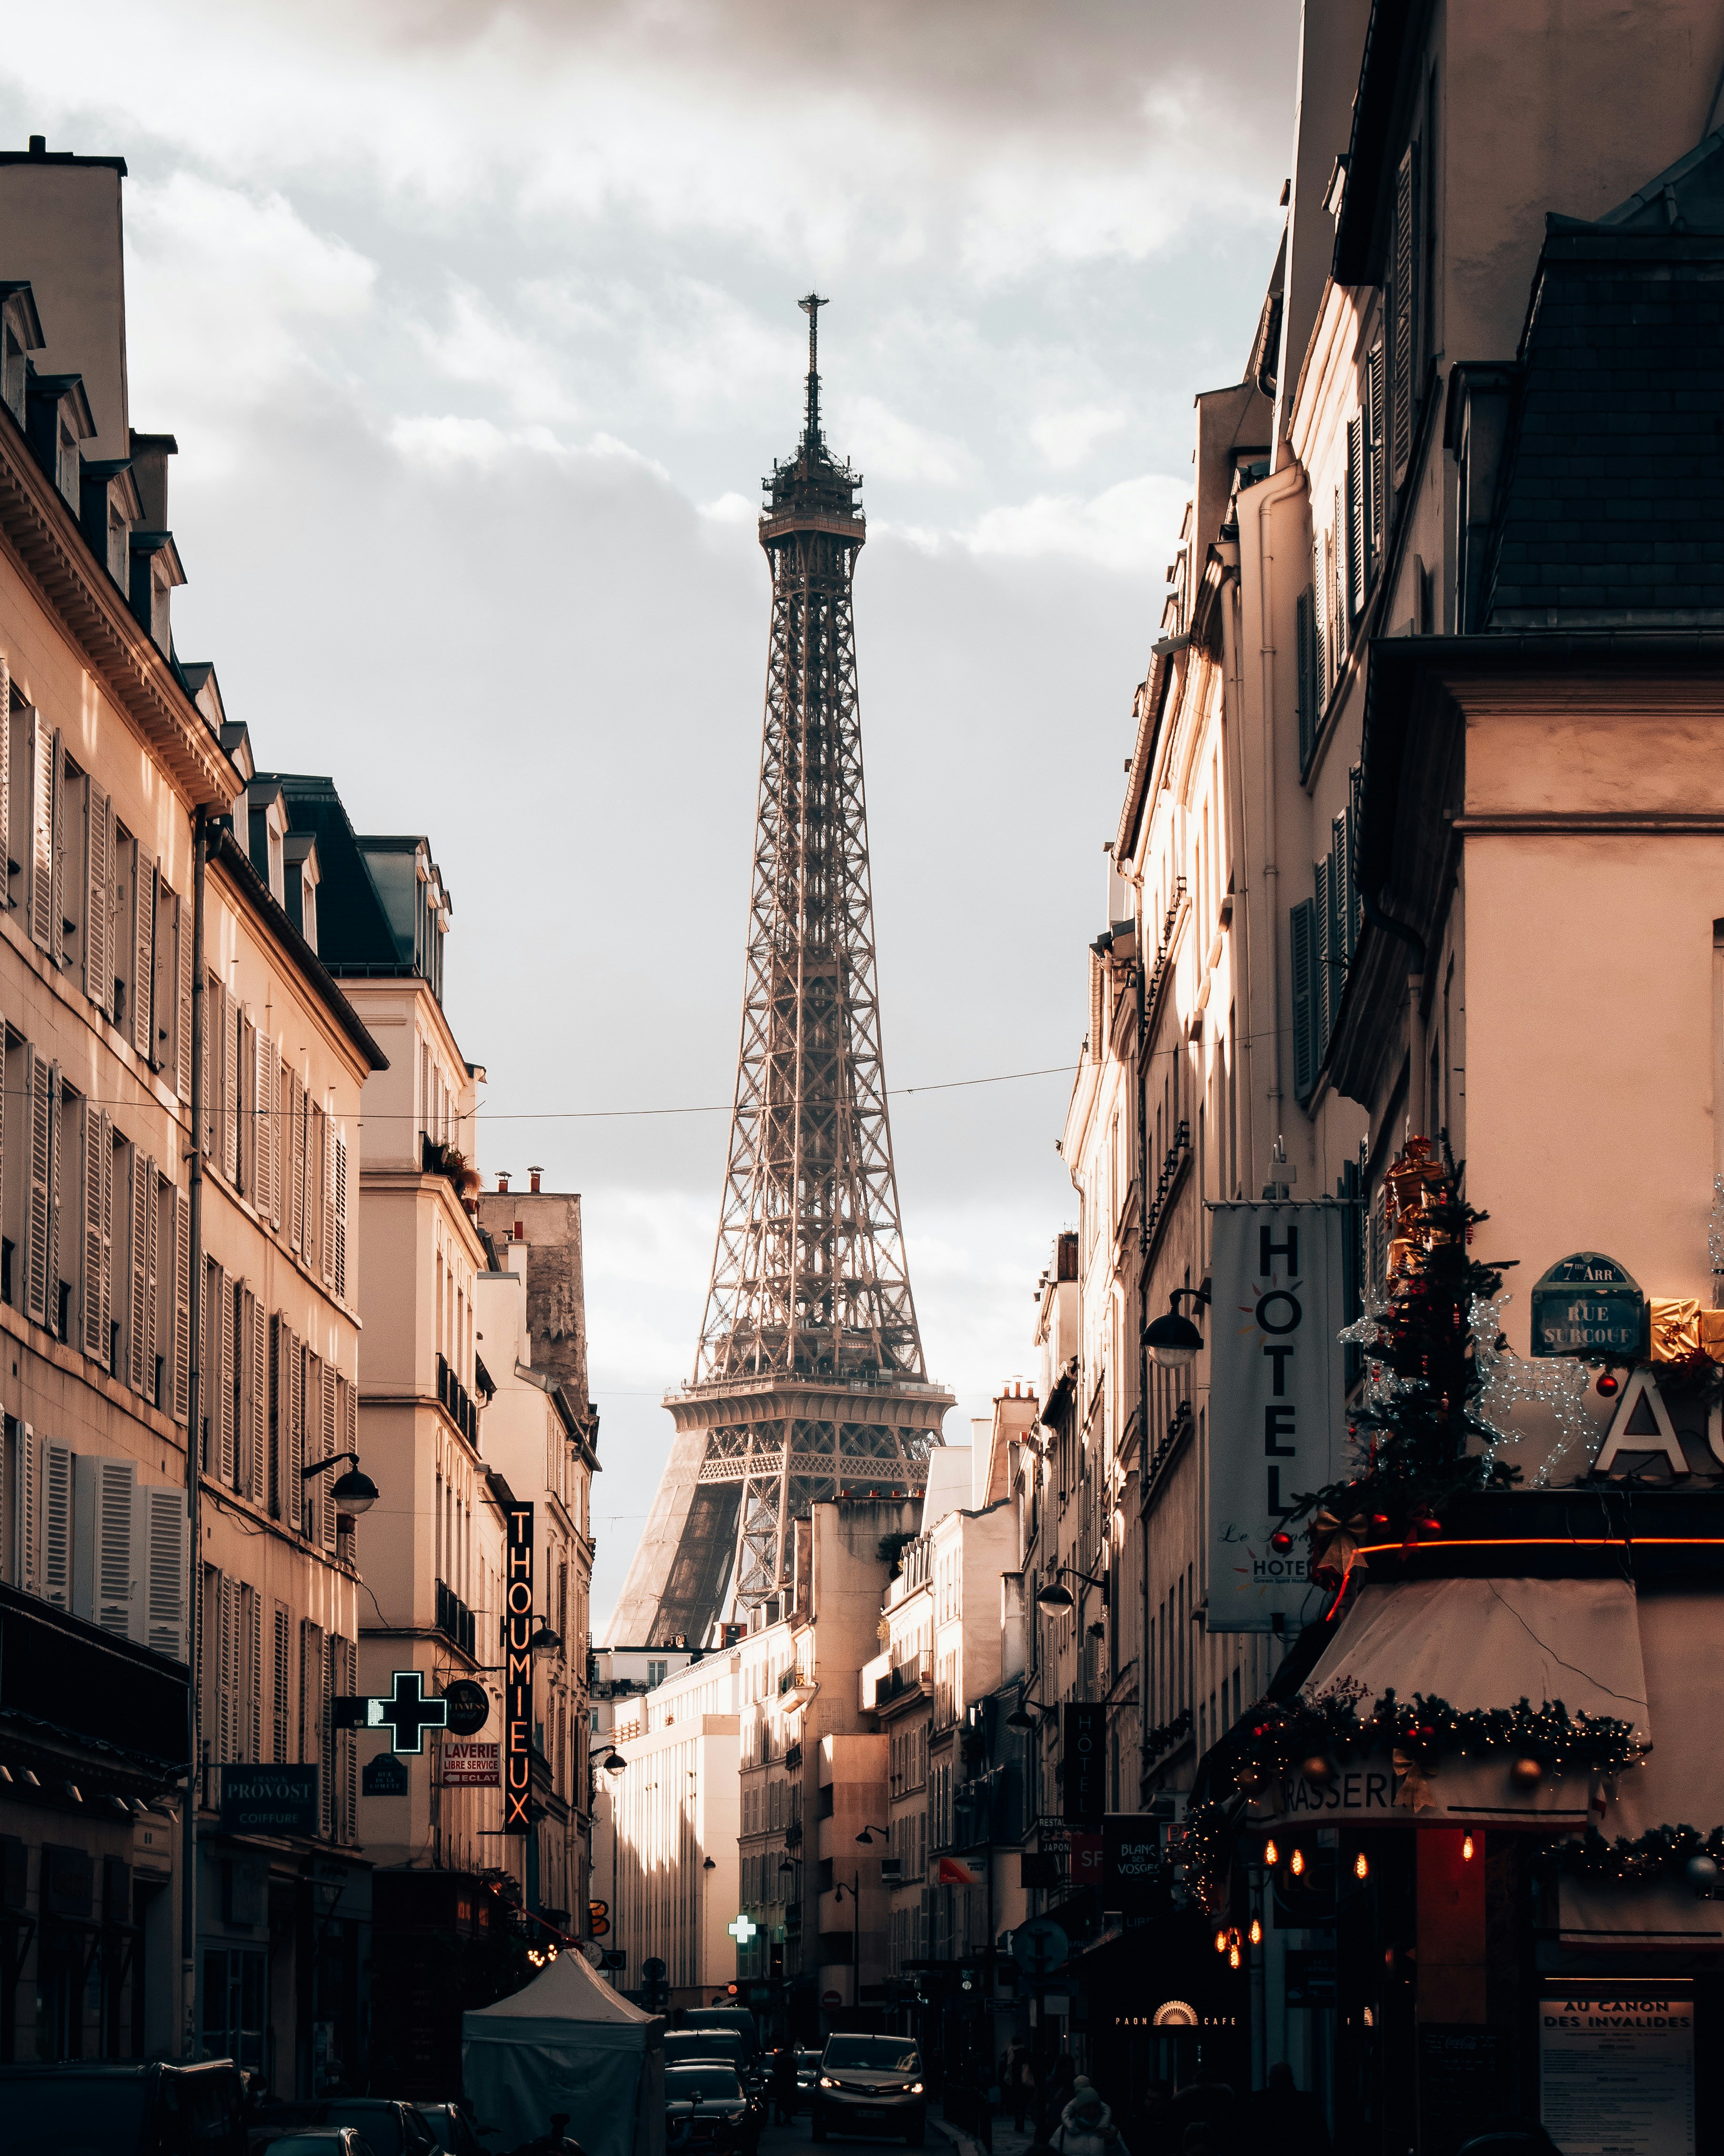 Un point de vue classique pour entrevoir la Tour Eiffel : la rue Saint Dominique dans le 7eme arrondissement de Paris